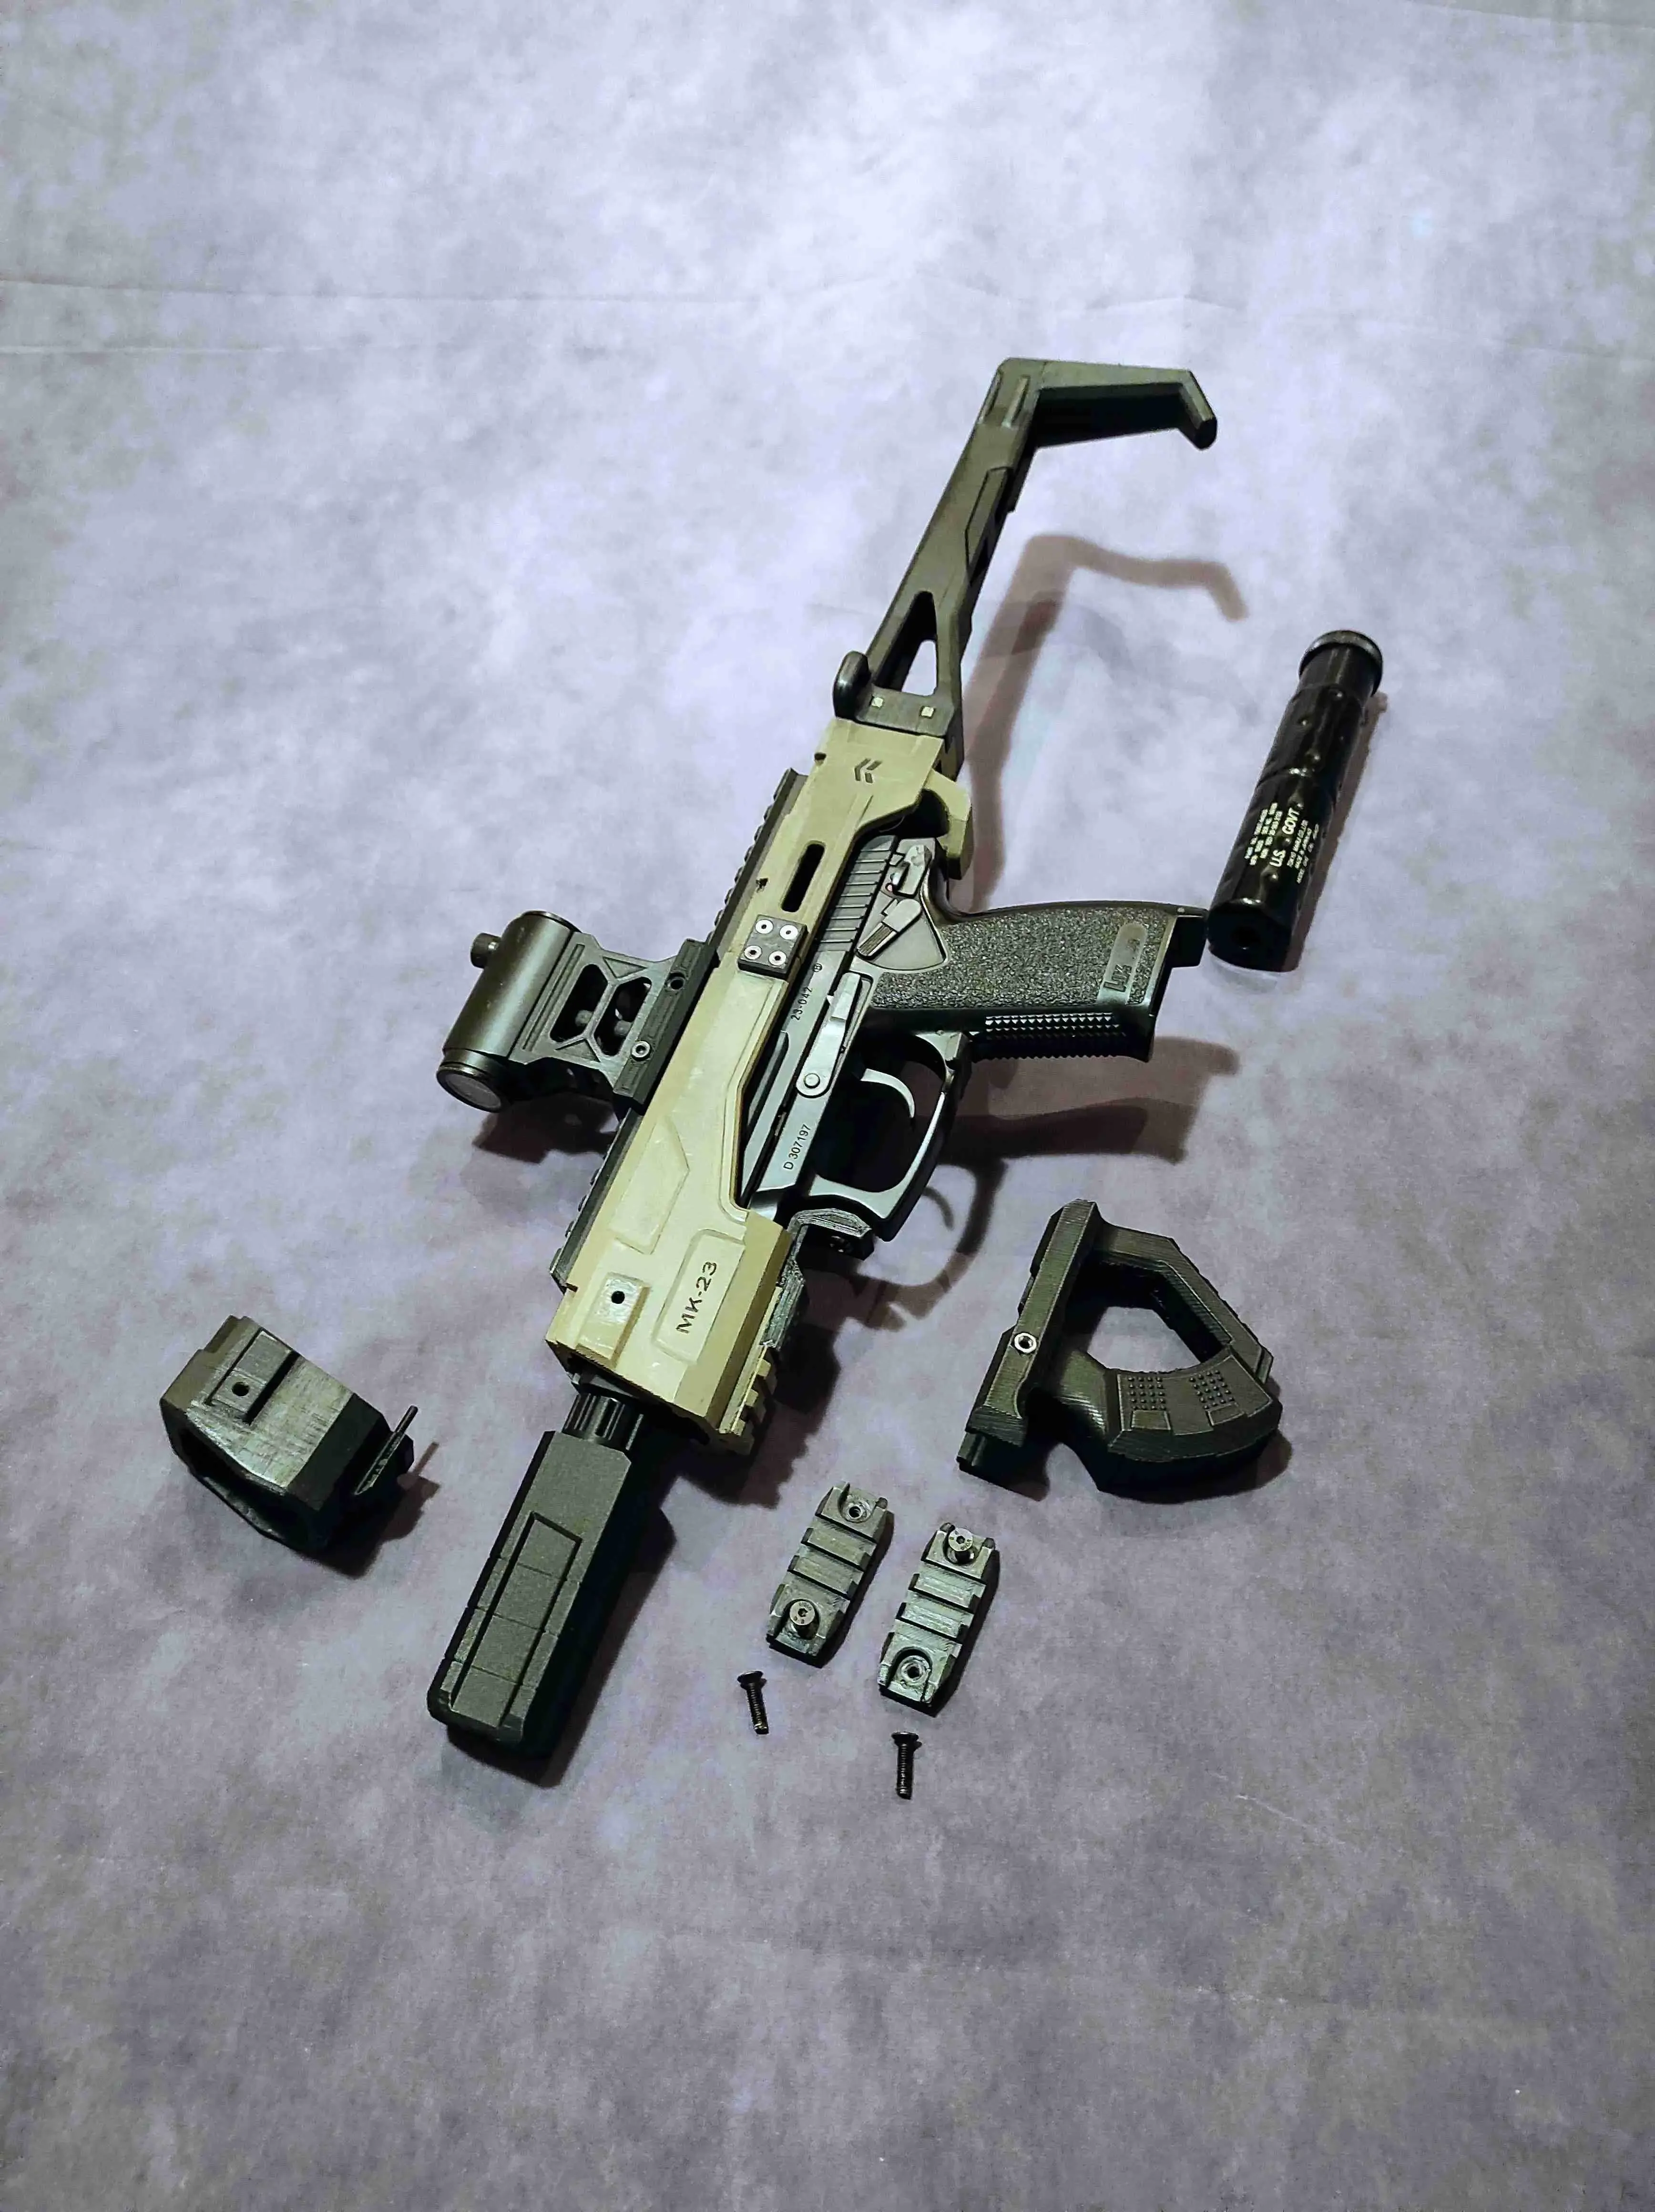 MK23 SOCOM Carbine kit AIRSOFT